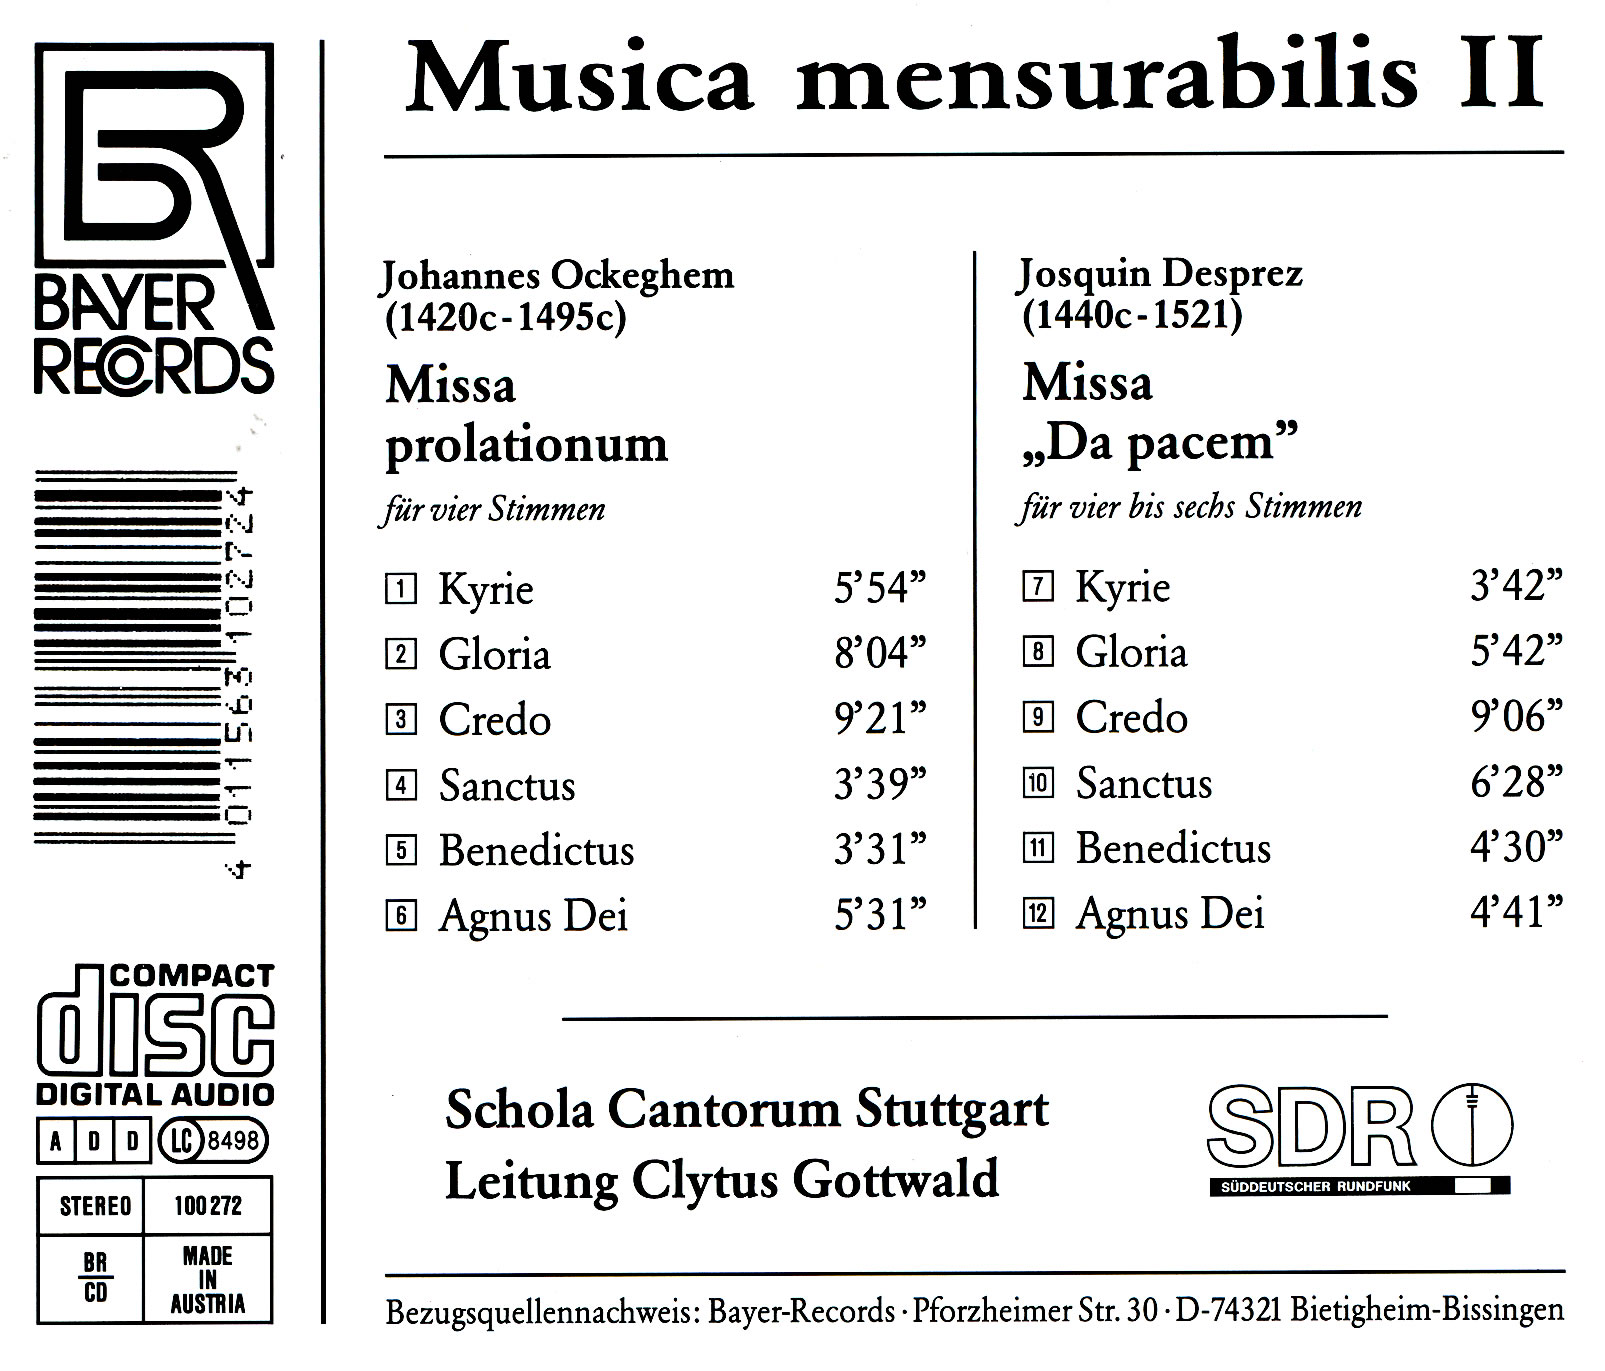 Musica mensurabilis II